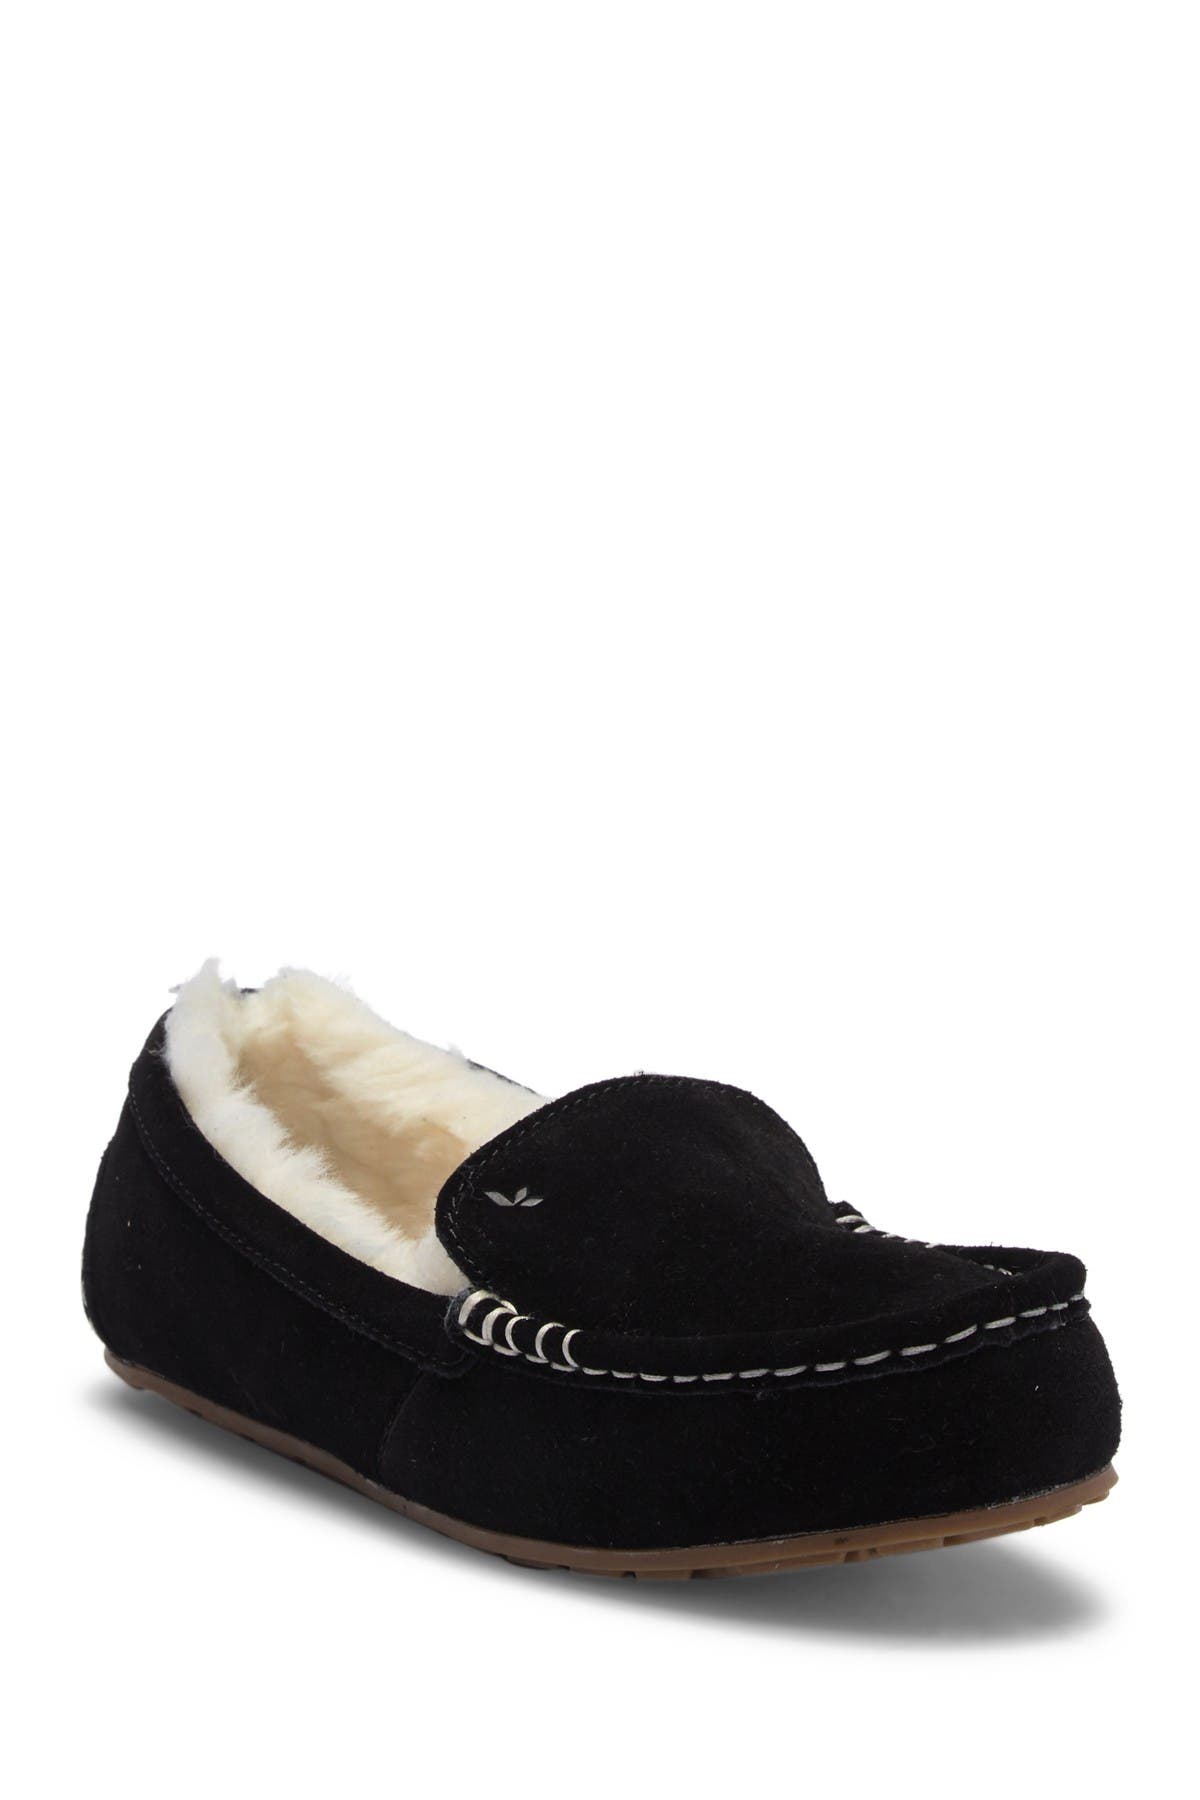 koolaburra lezly slippers